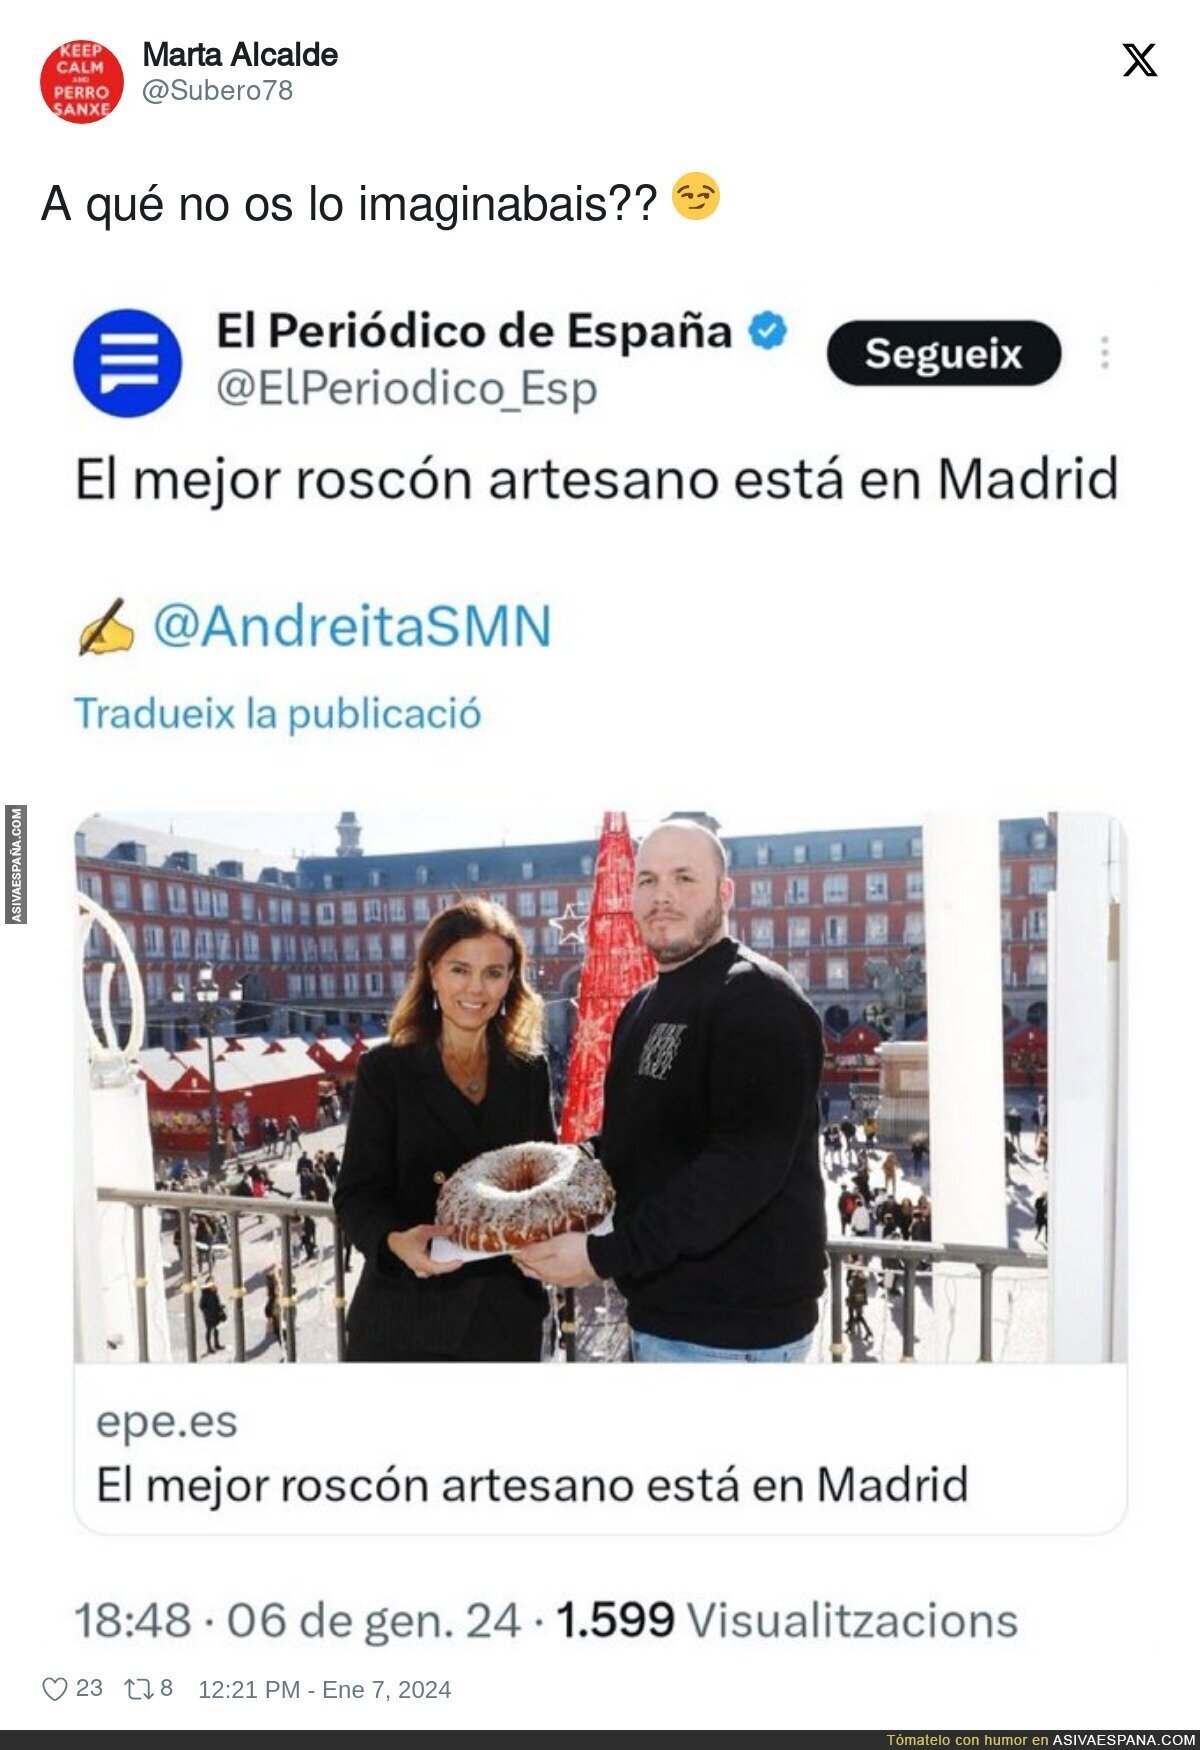 Todo lo mejor está en Madrid